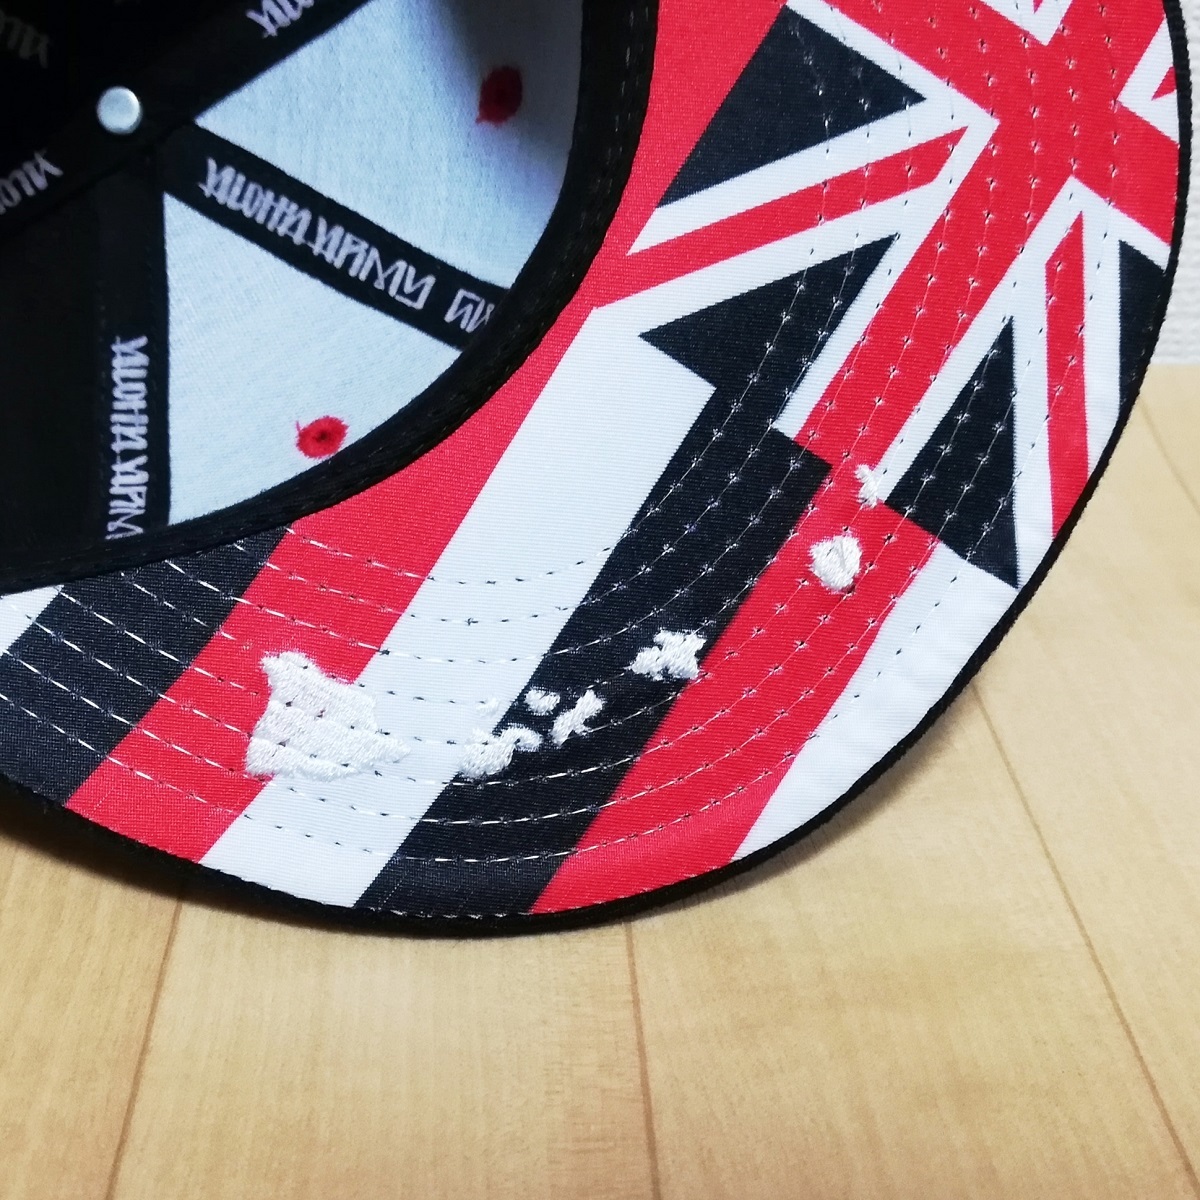 Aloha Army アロハ アーミー ロゴ 刺繍 つば裏 ハワイ州旗 ハワイ諸島 ベースボール キャップ 帽子 黒 ブラック 未使用 IN4MATION ブランド